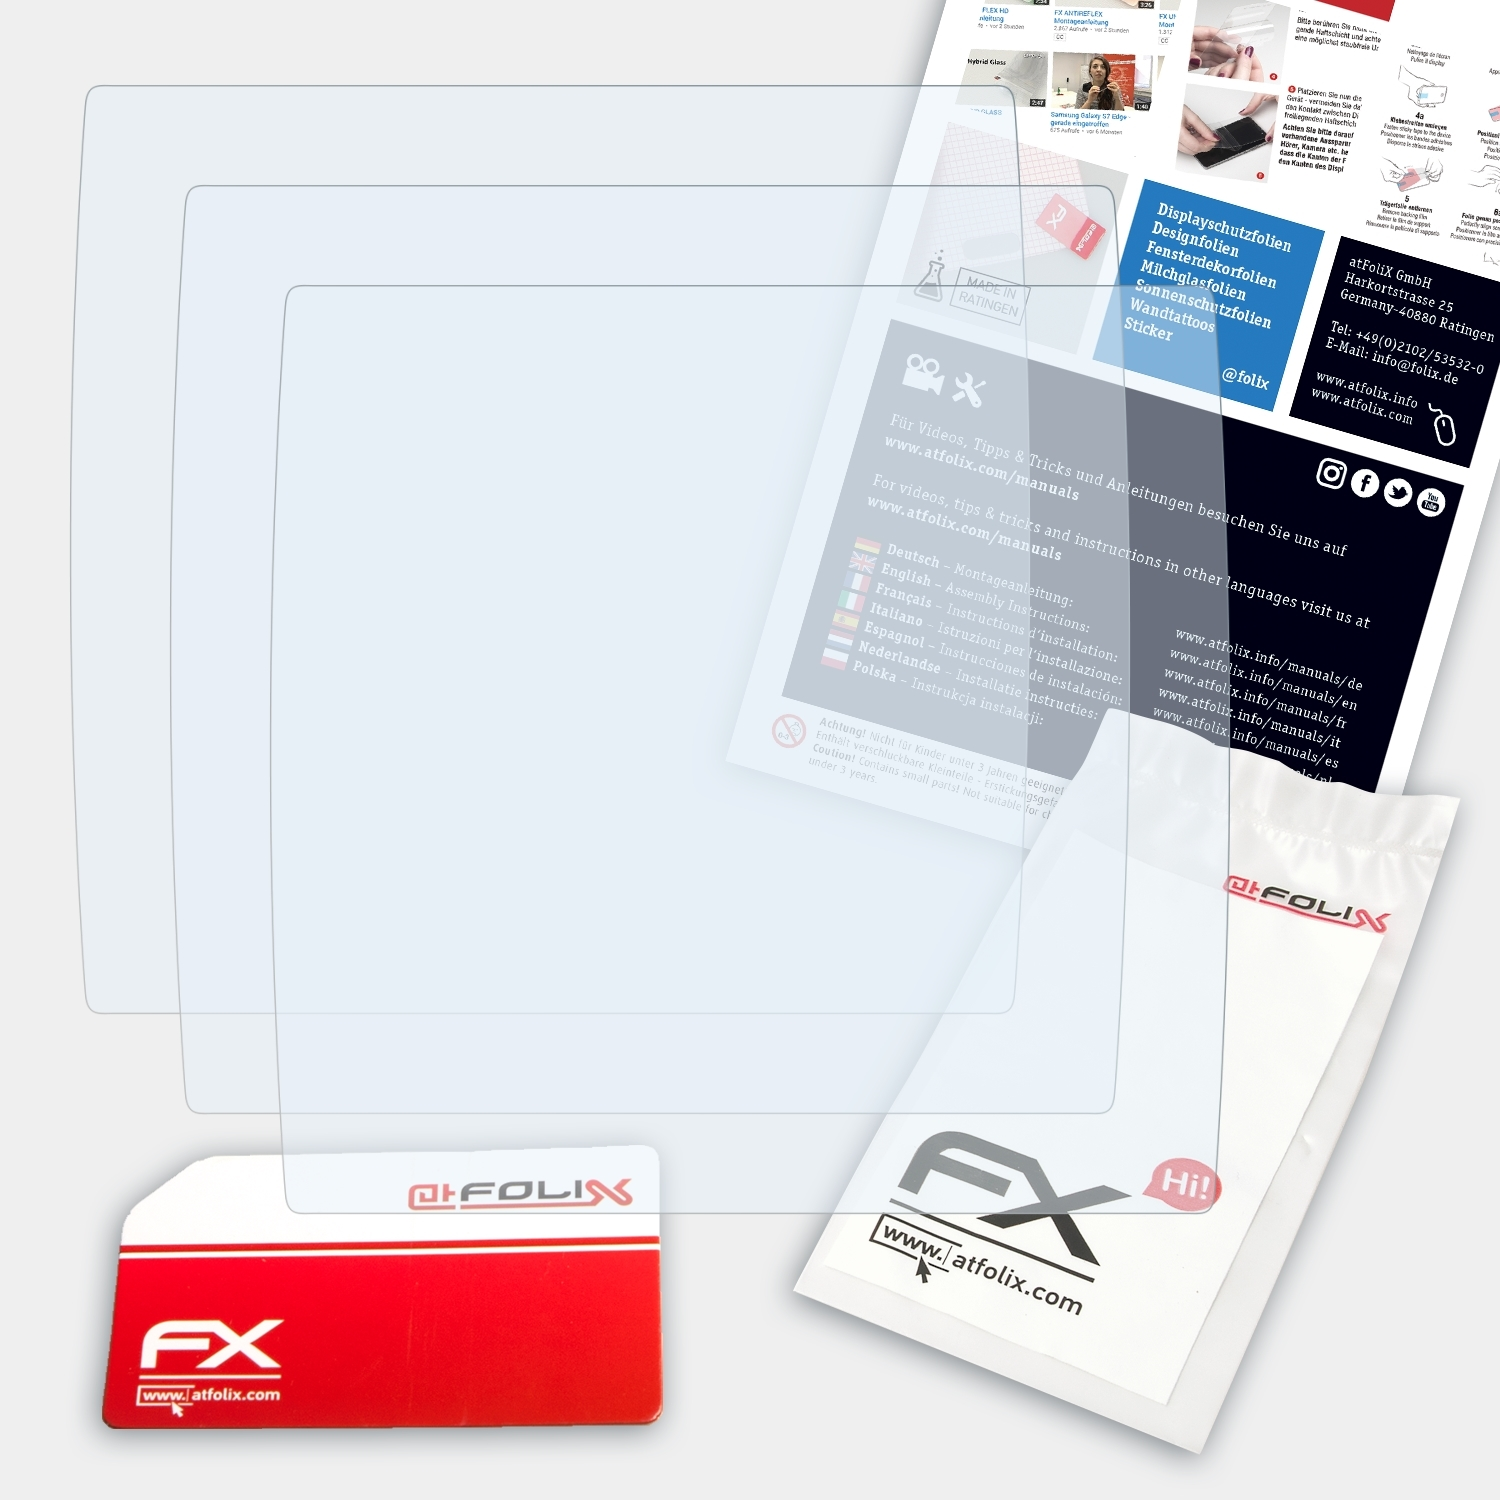 3x Sigma Displayschutz(für Rox 6.0) FX-Clear ATFOLIX